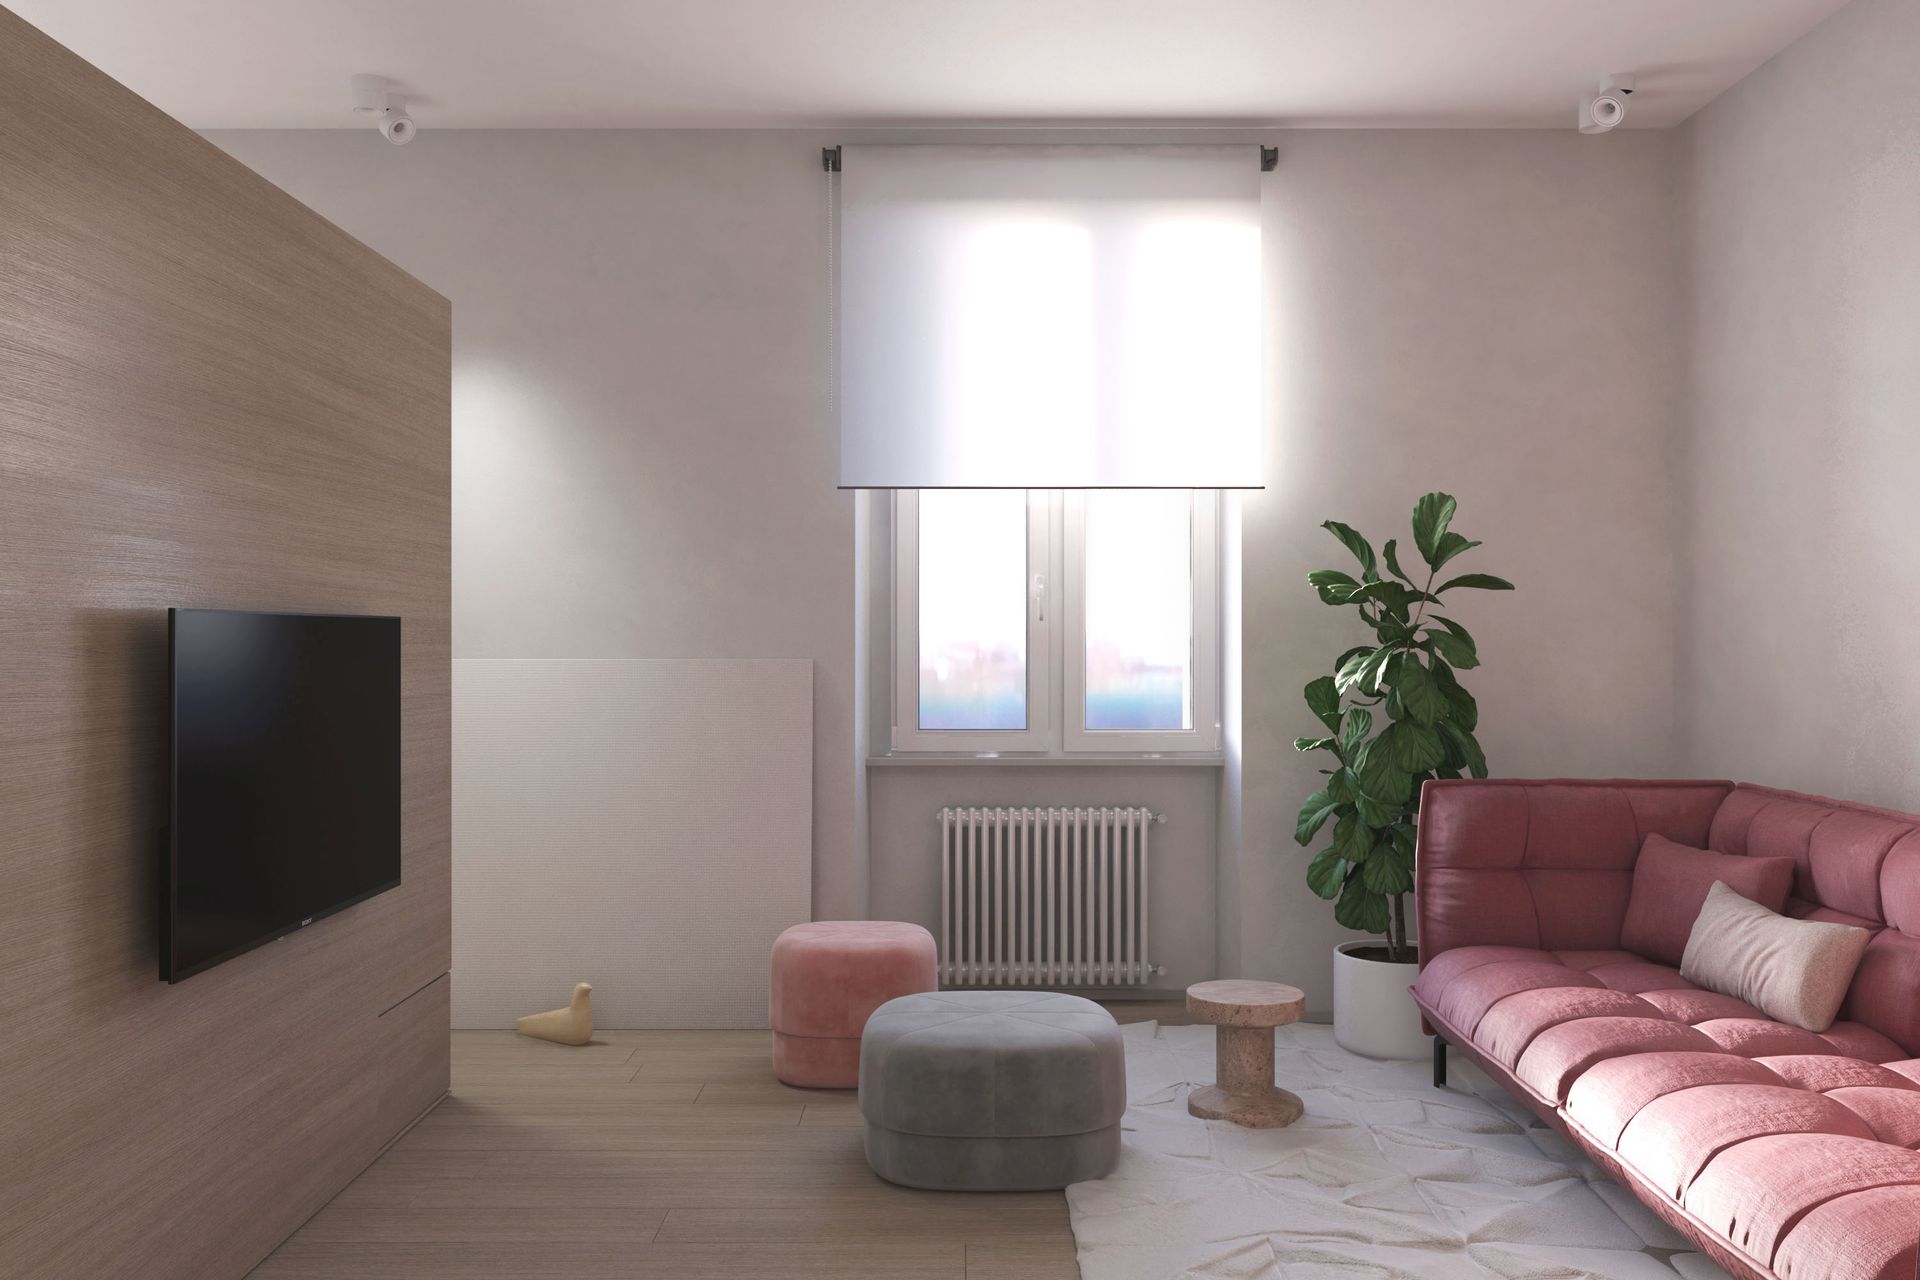 Progetto interior design, ristrutturazione appartamento attico Bergamo, Milano, Lago di Como, Londra, New York, Parigi. Officina Magisafi architettura design - living